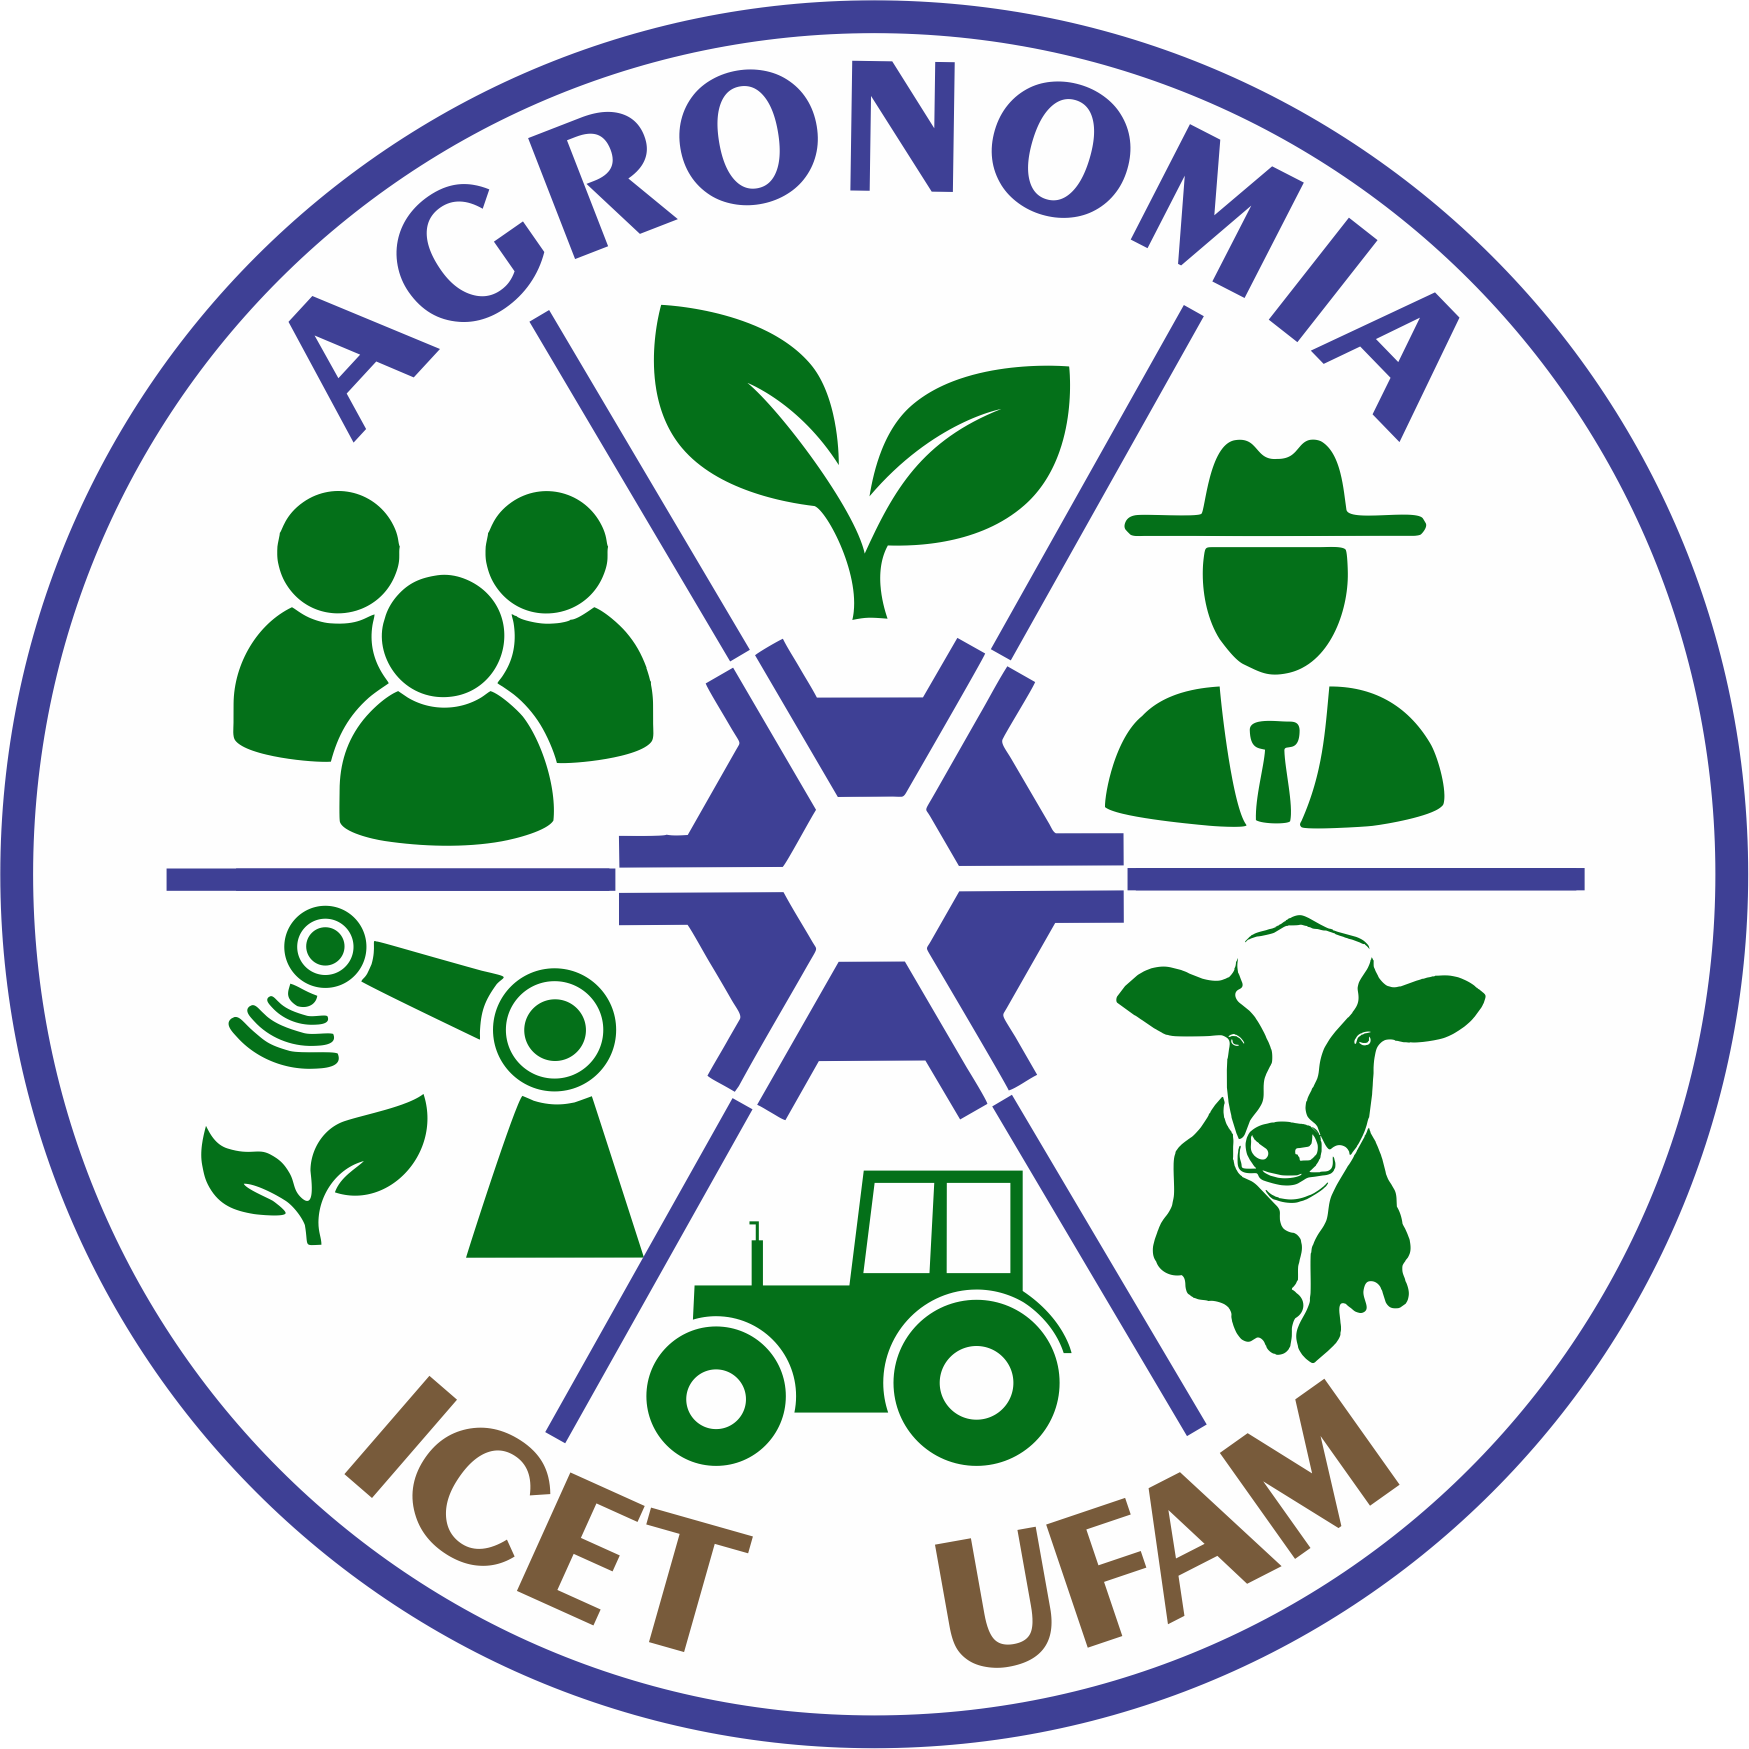 Imagens do simbolo agronomia png